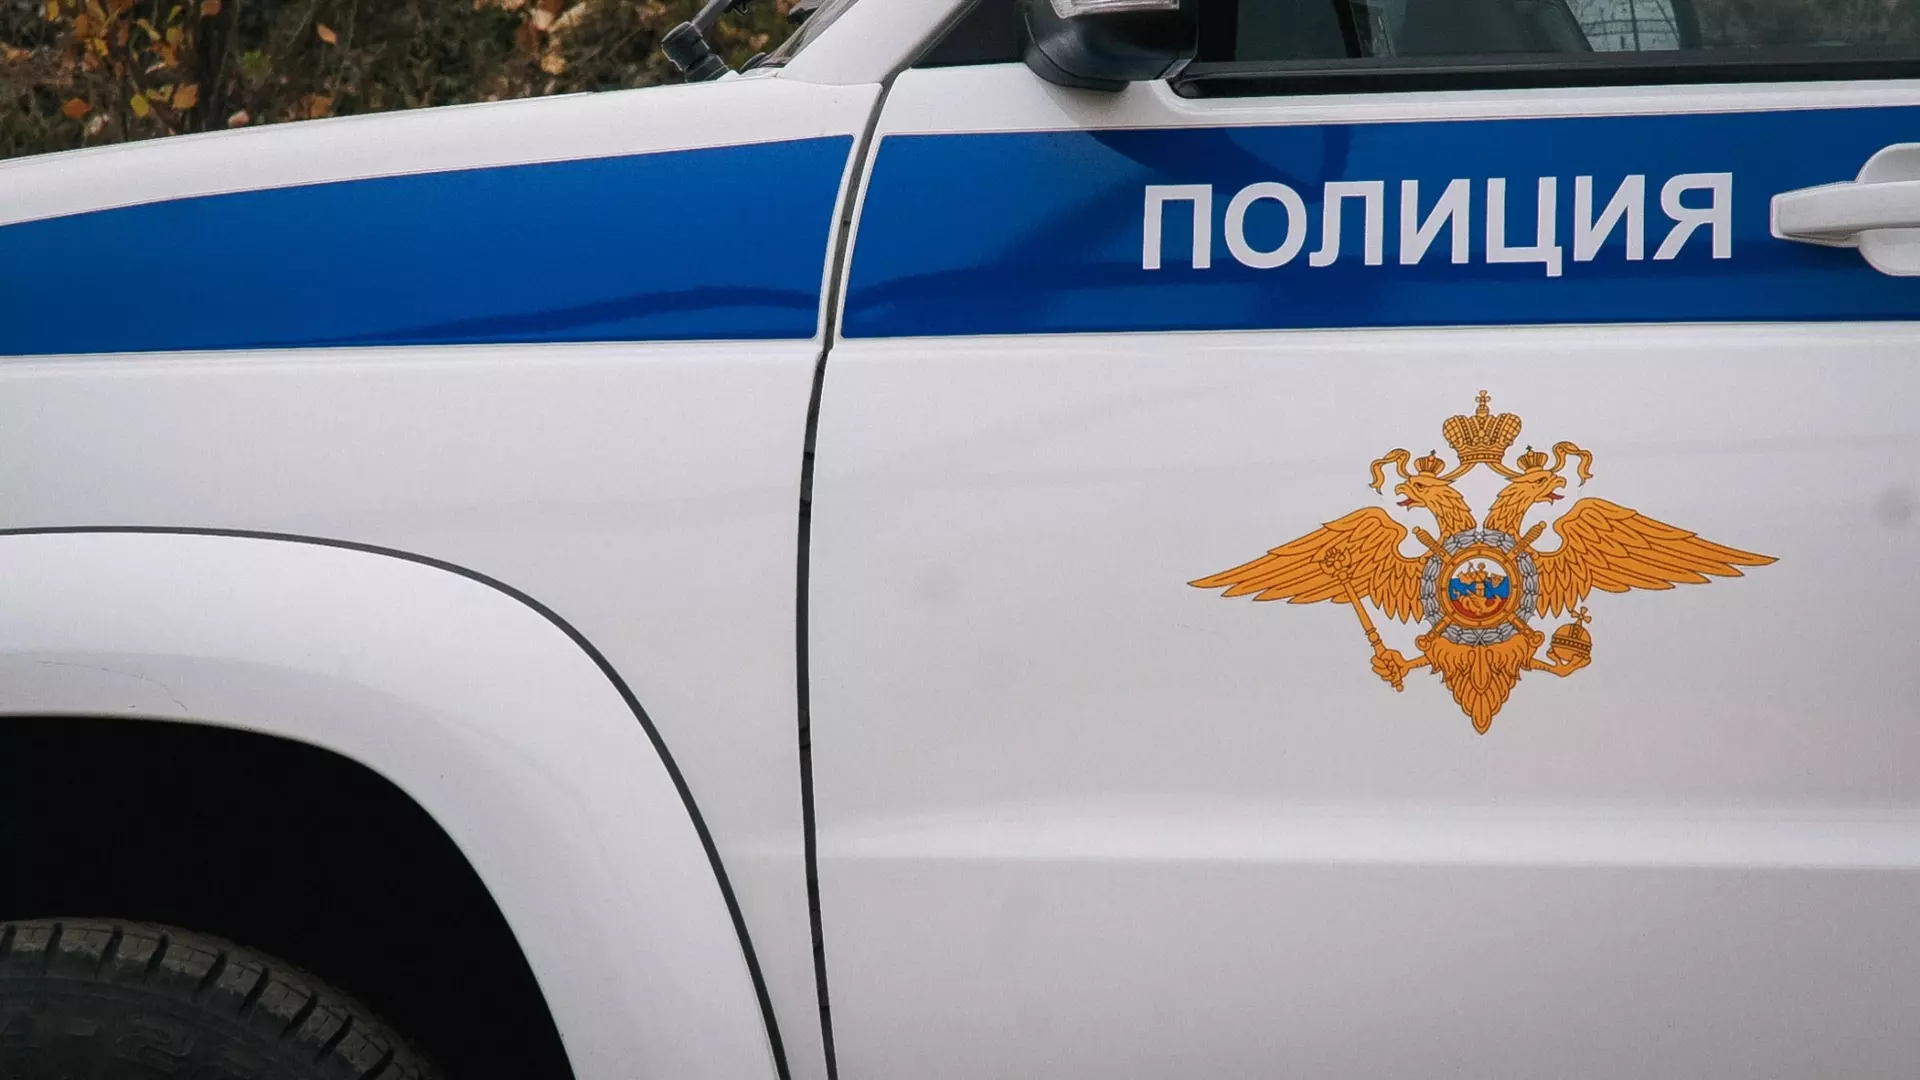 Задушившую своих детей женщину из Екатеринбурга оставили под арестом